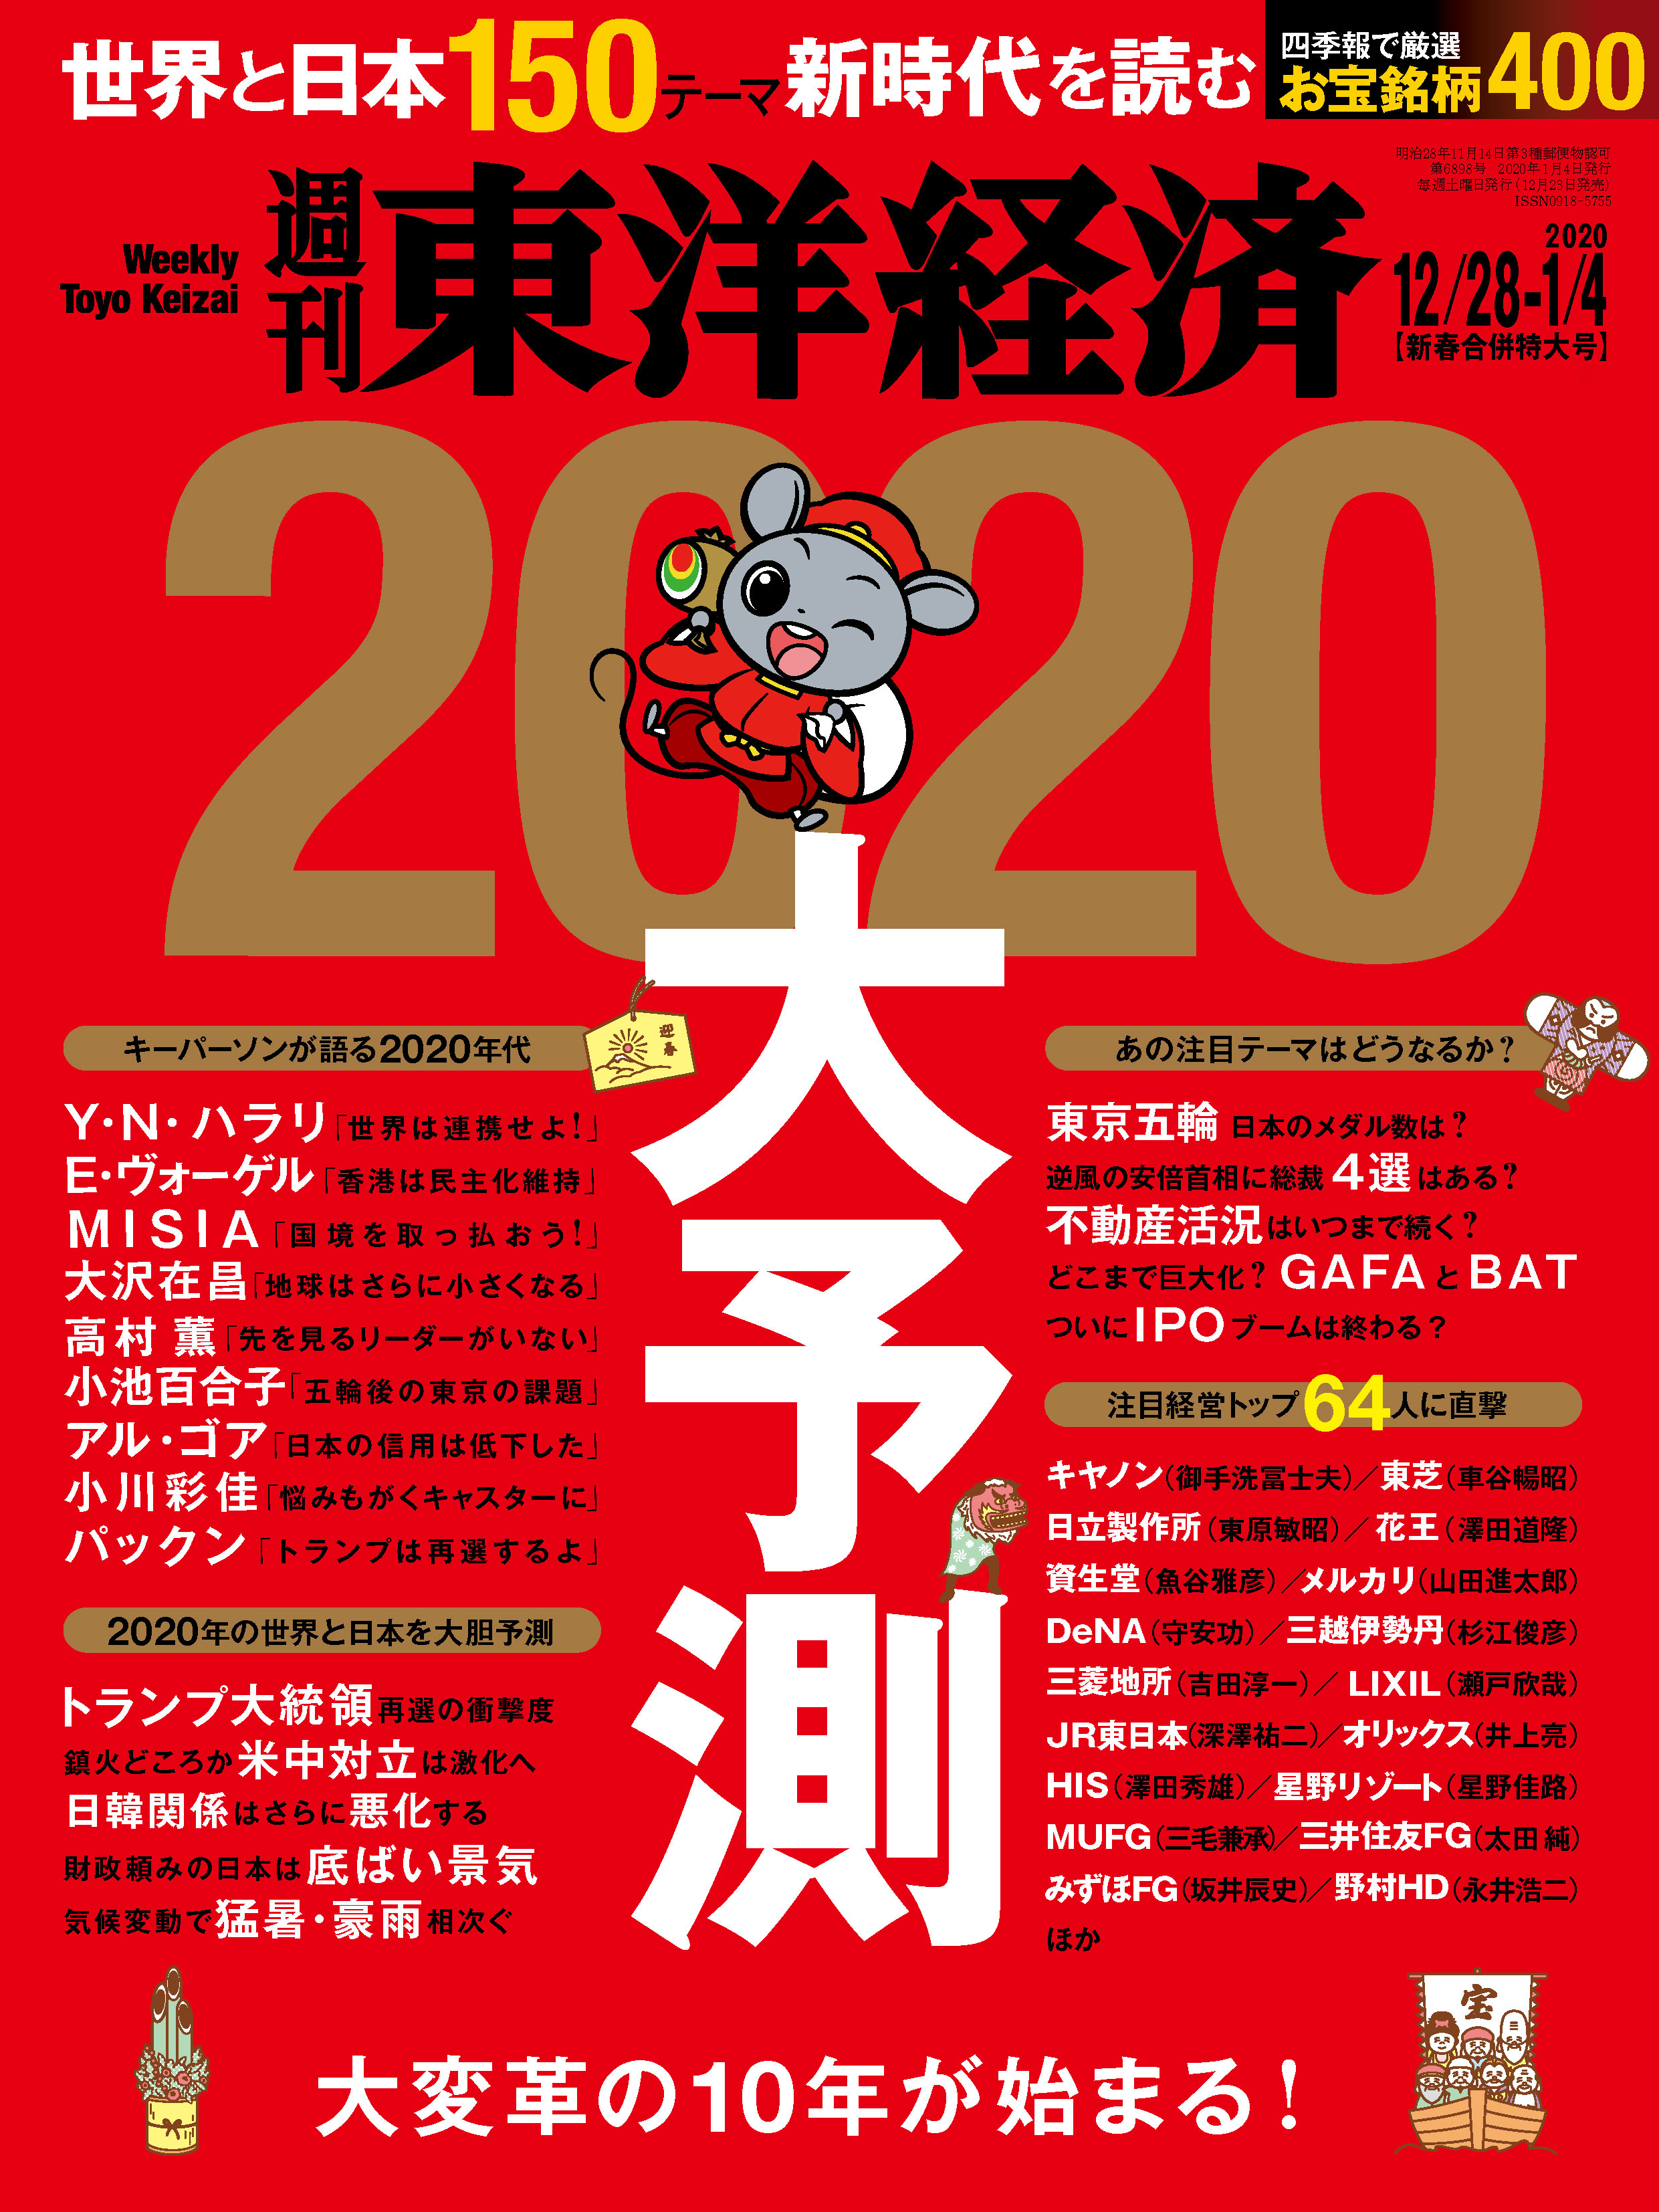 週刊東洋経済 2019/12/28-2020/1/4新春合併特大号 - - 漫画・ラノベ